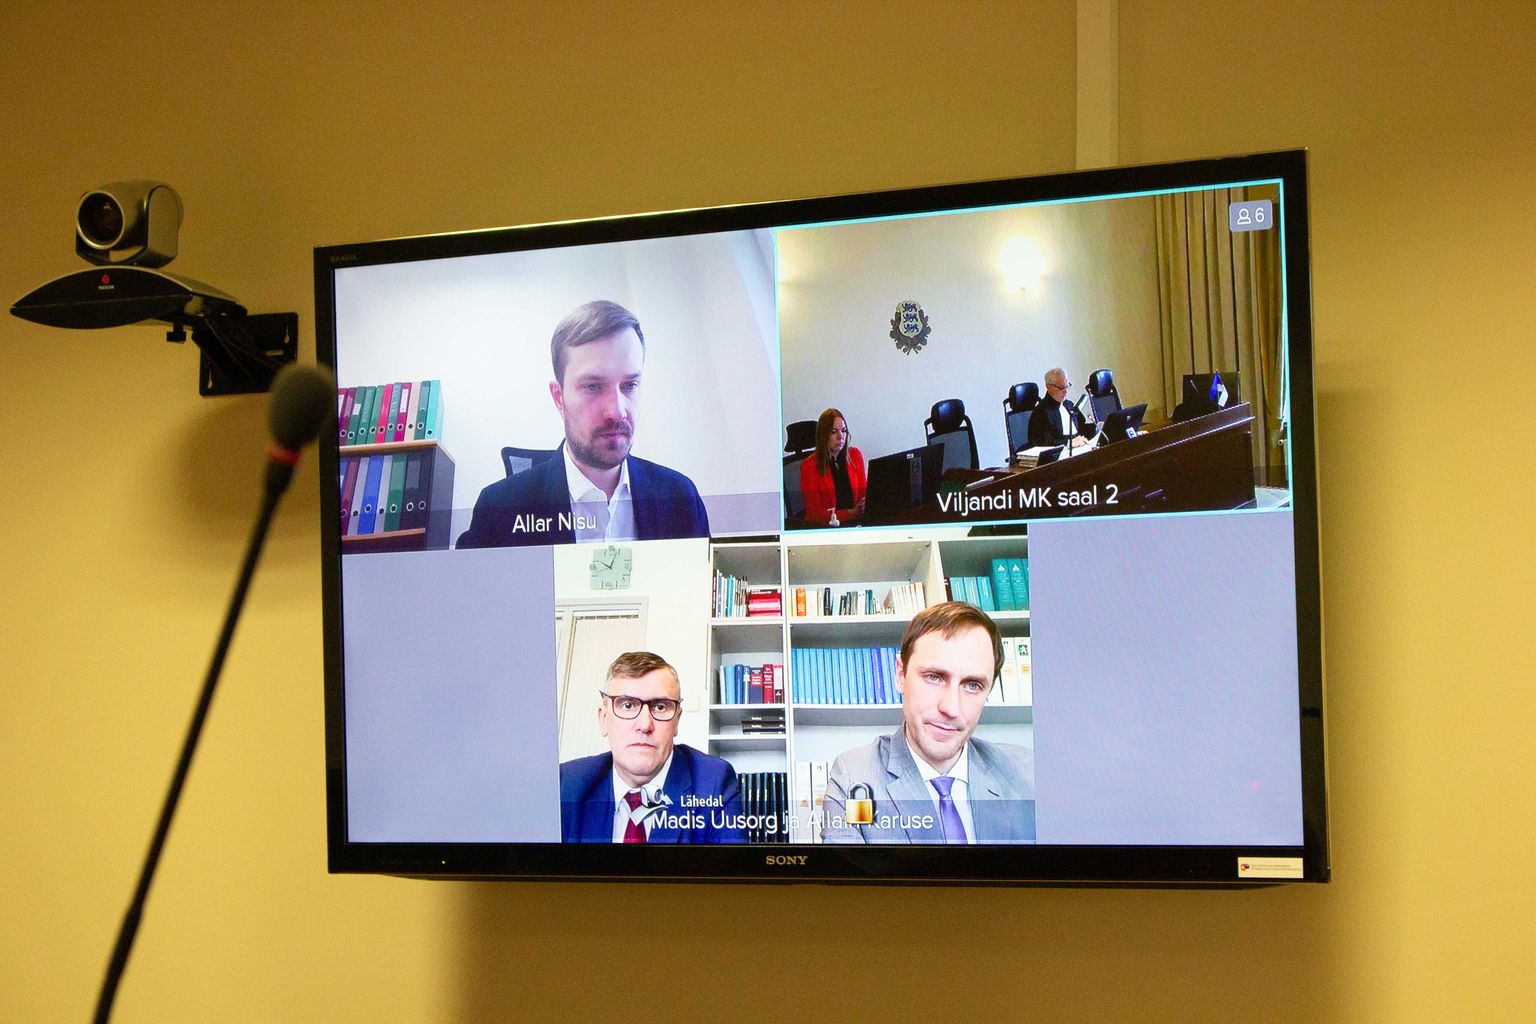 Kohtuistung Allain Karuse ja A.Karuse AS-i üle peeti virtuaalselt. Kohtunik oli Viljandis, Allain Karuse (vasakul all) koos kaitsja Madis Uusoruga viimase büroos.